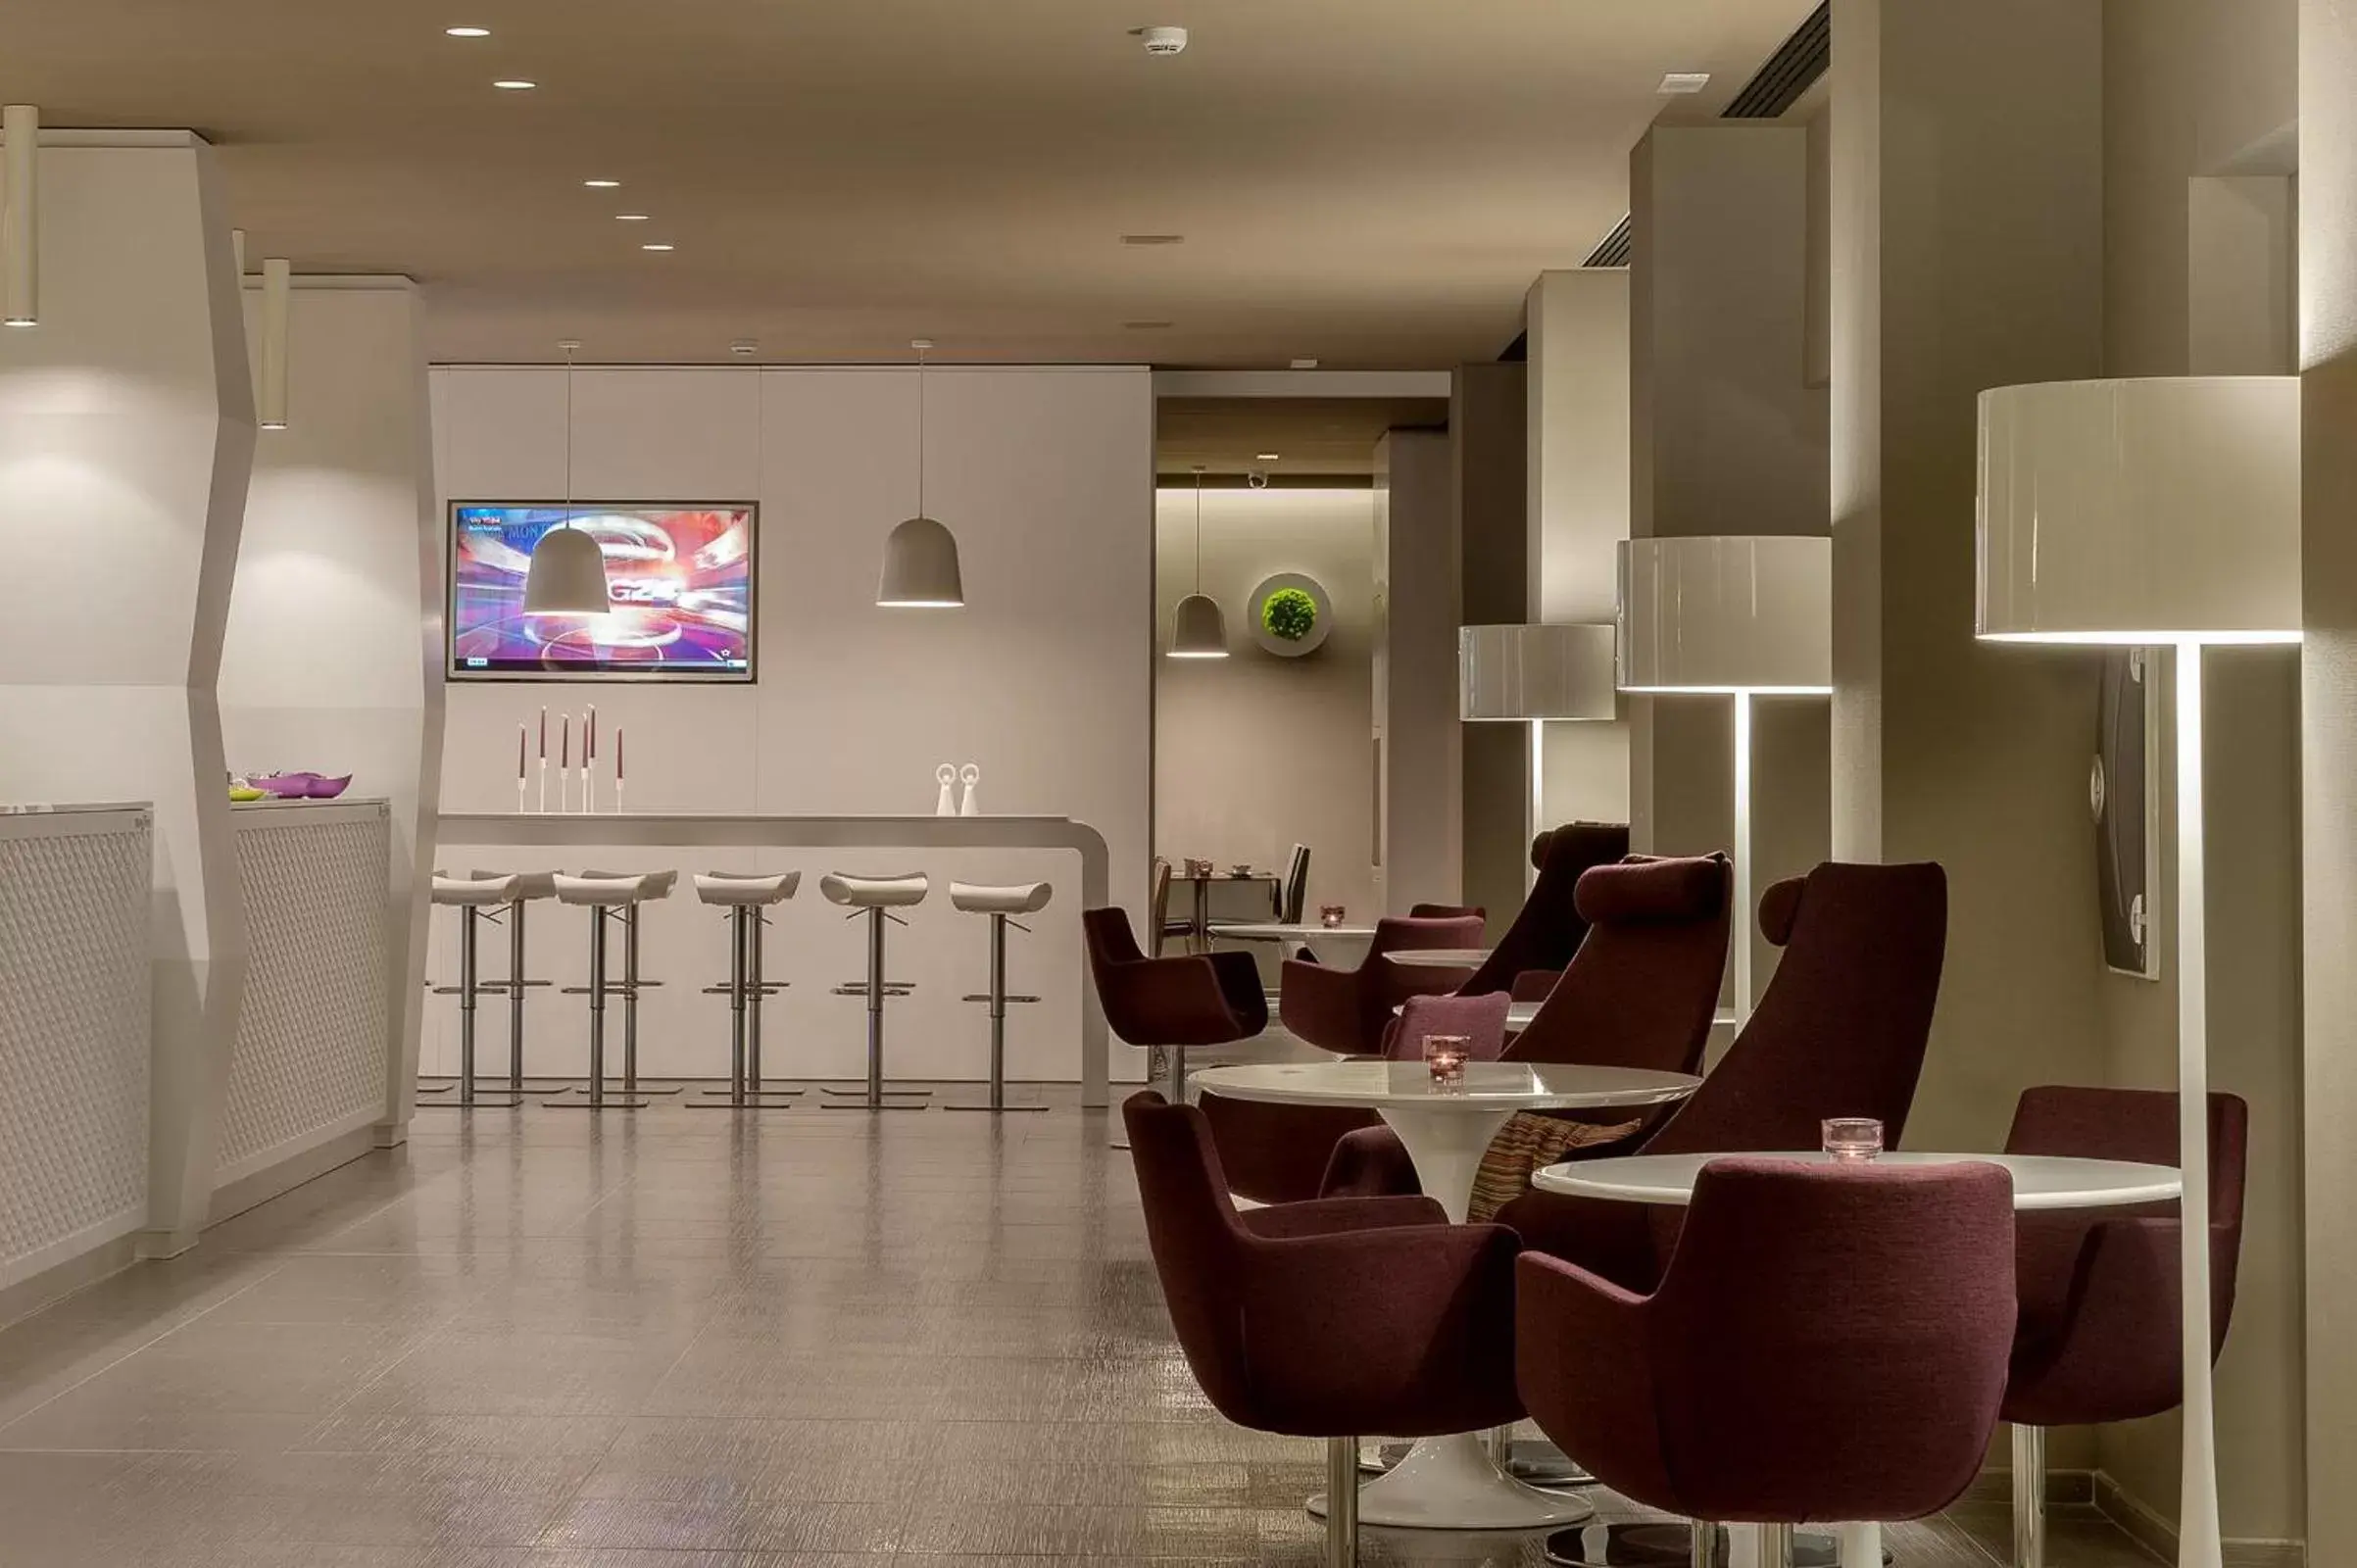 Lobby or reception in 8Piuhotel